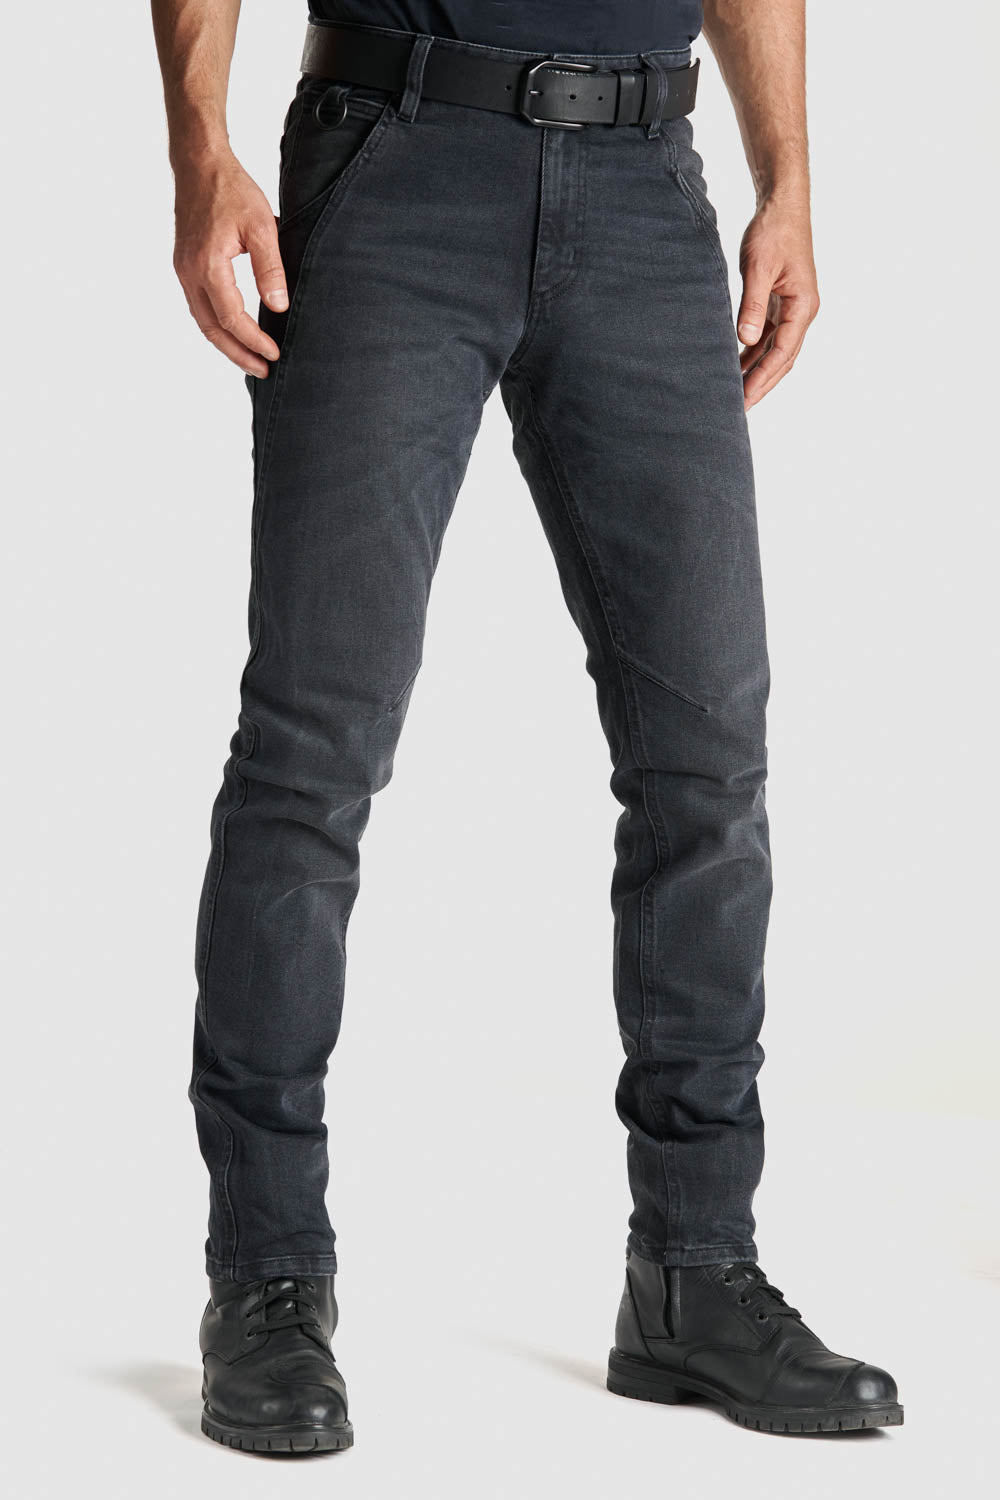 Pando Moto Robby SLIM Casual Jeans, Length 30